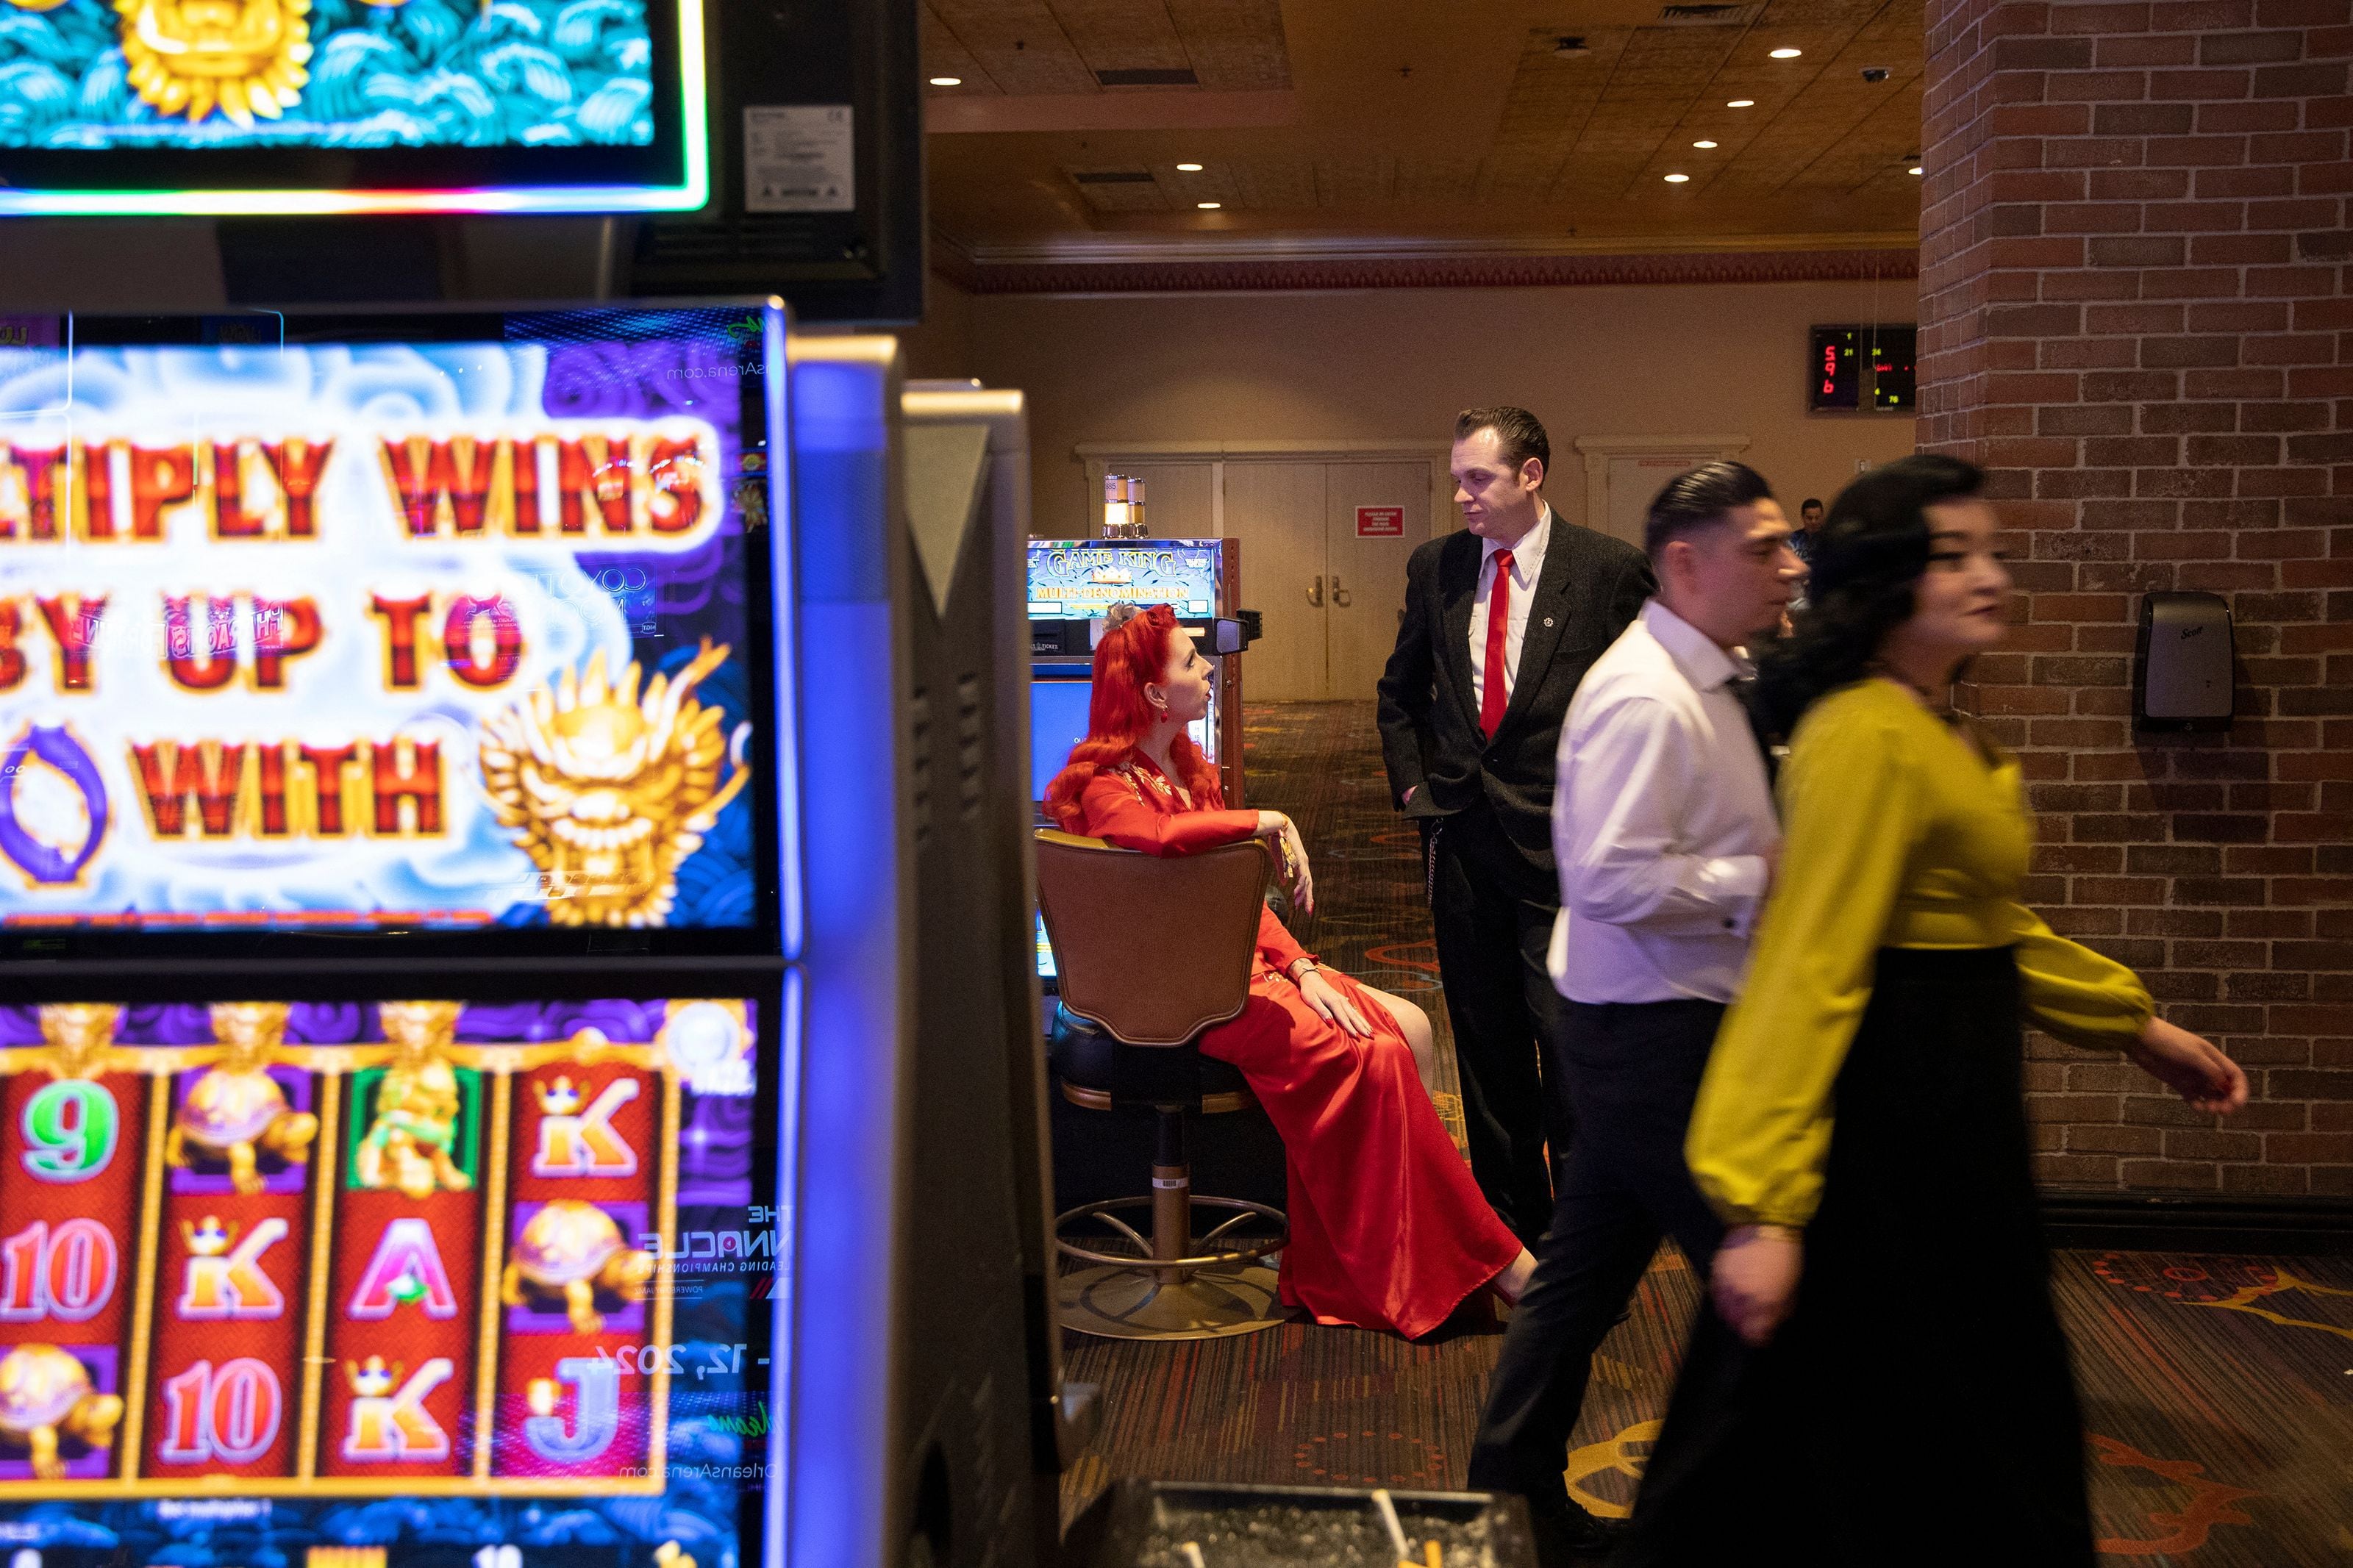 Trabajo: Famoso casino tiene varios puestos de empleo disponibles 